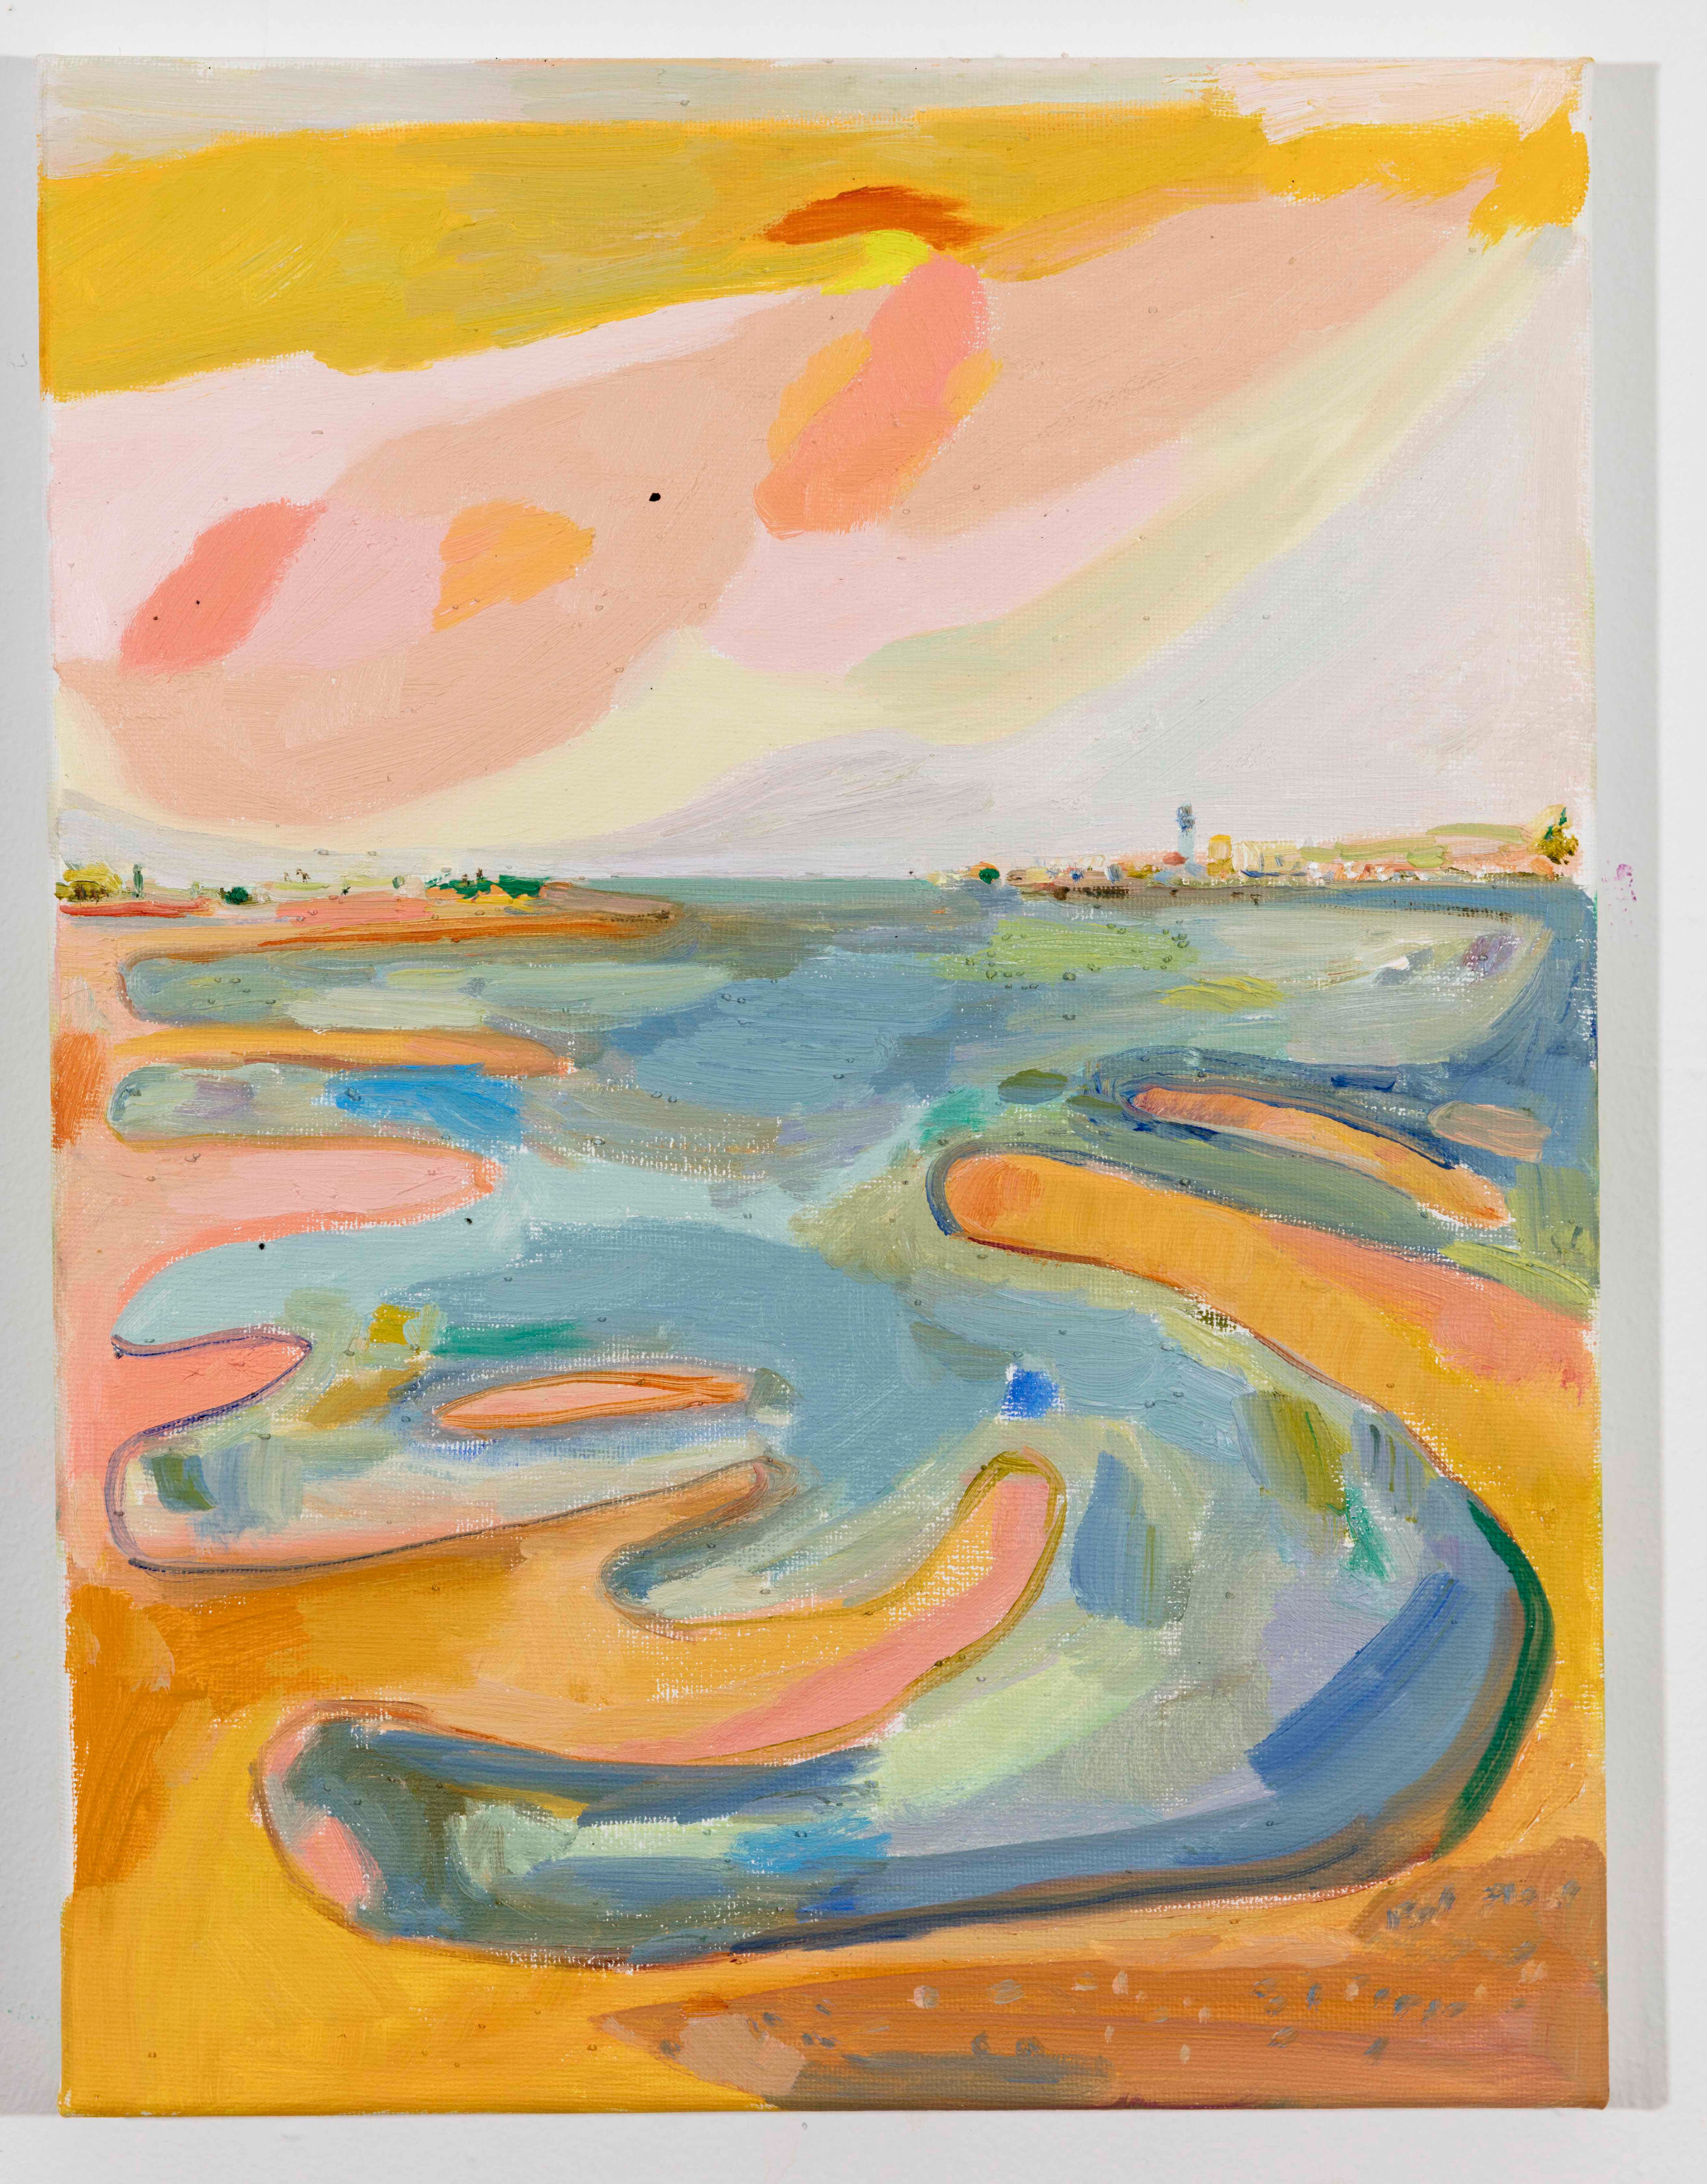 LISA SANDITZ, Landscape Color Study 26, 2019